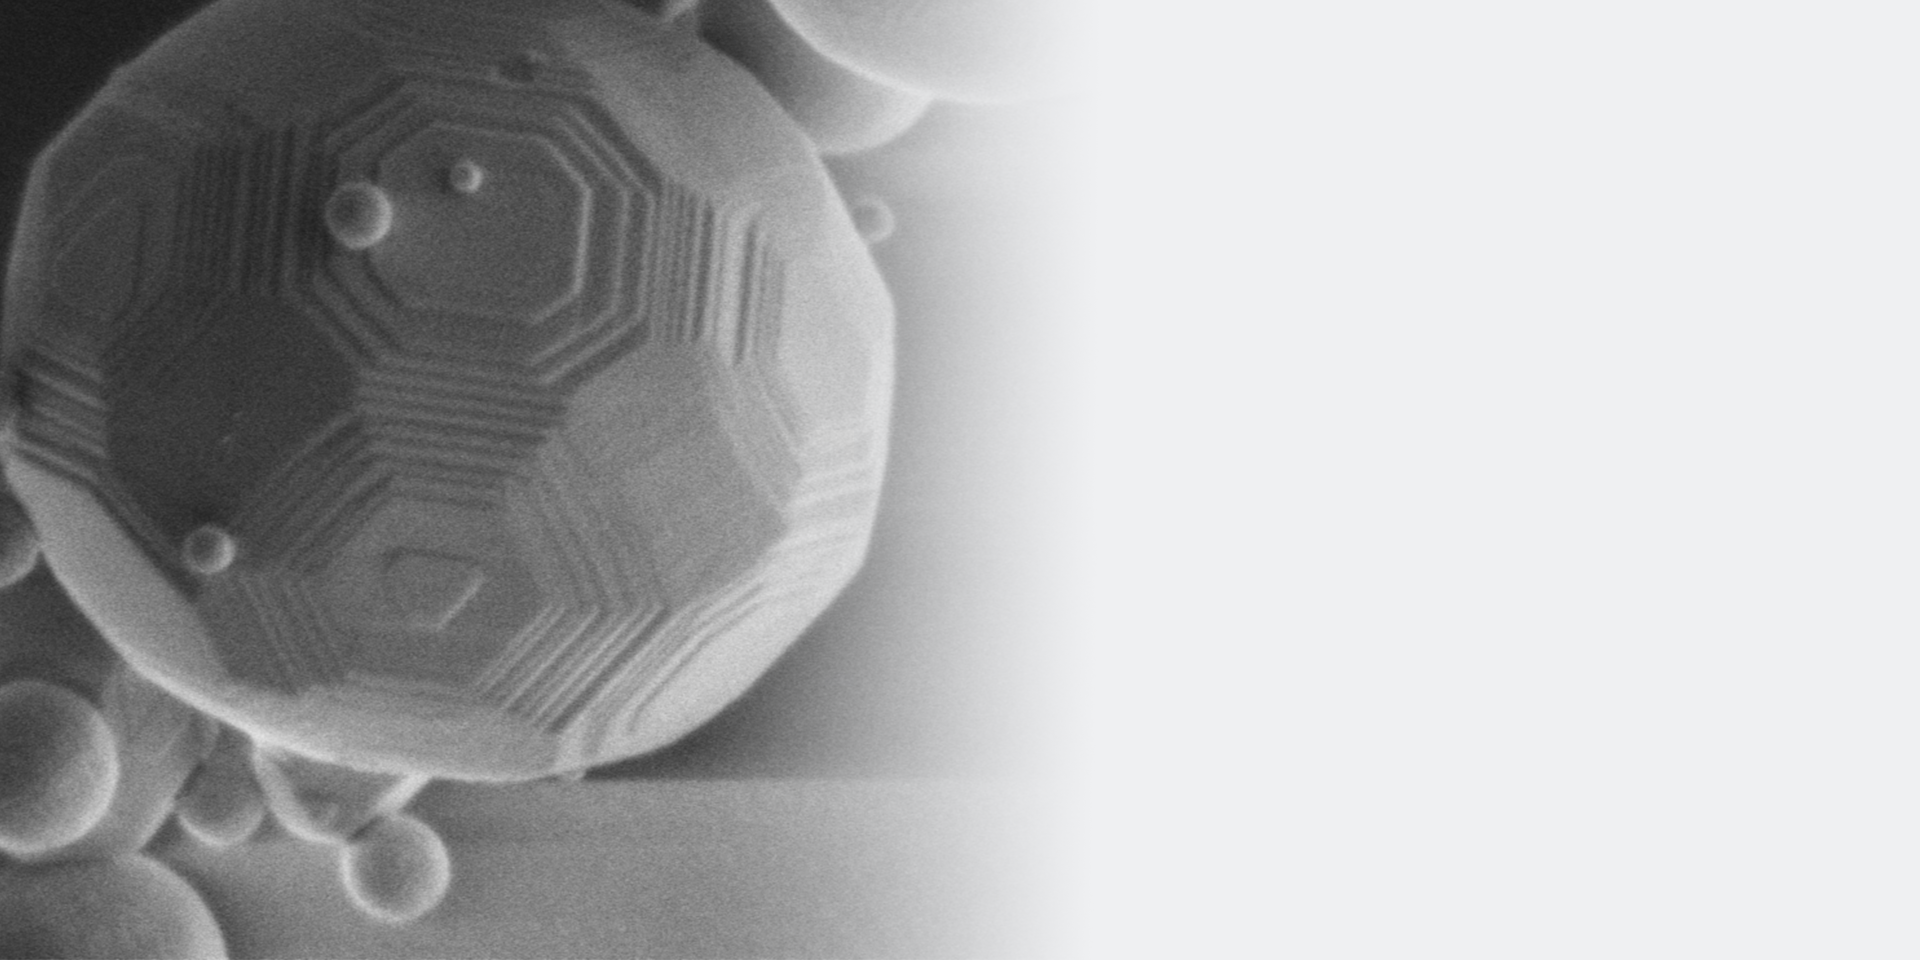 Alta resolución a 500 V: el tamaño medido de este terraplén de una esfera sinterizada a nanoescala de Al2O3 es de 3 nm. Captado con Sigma 560, detector Inlens SE, 500 V.